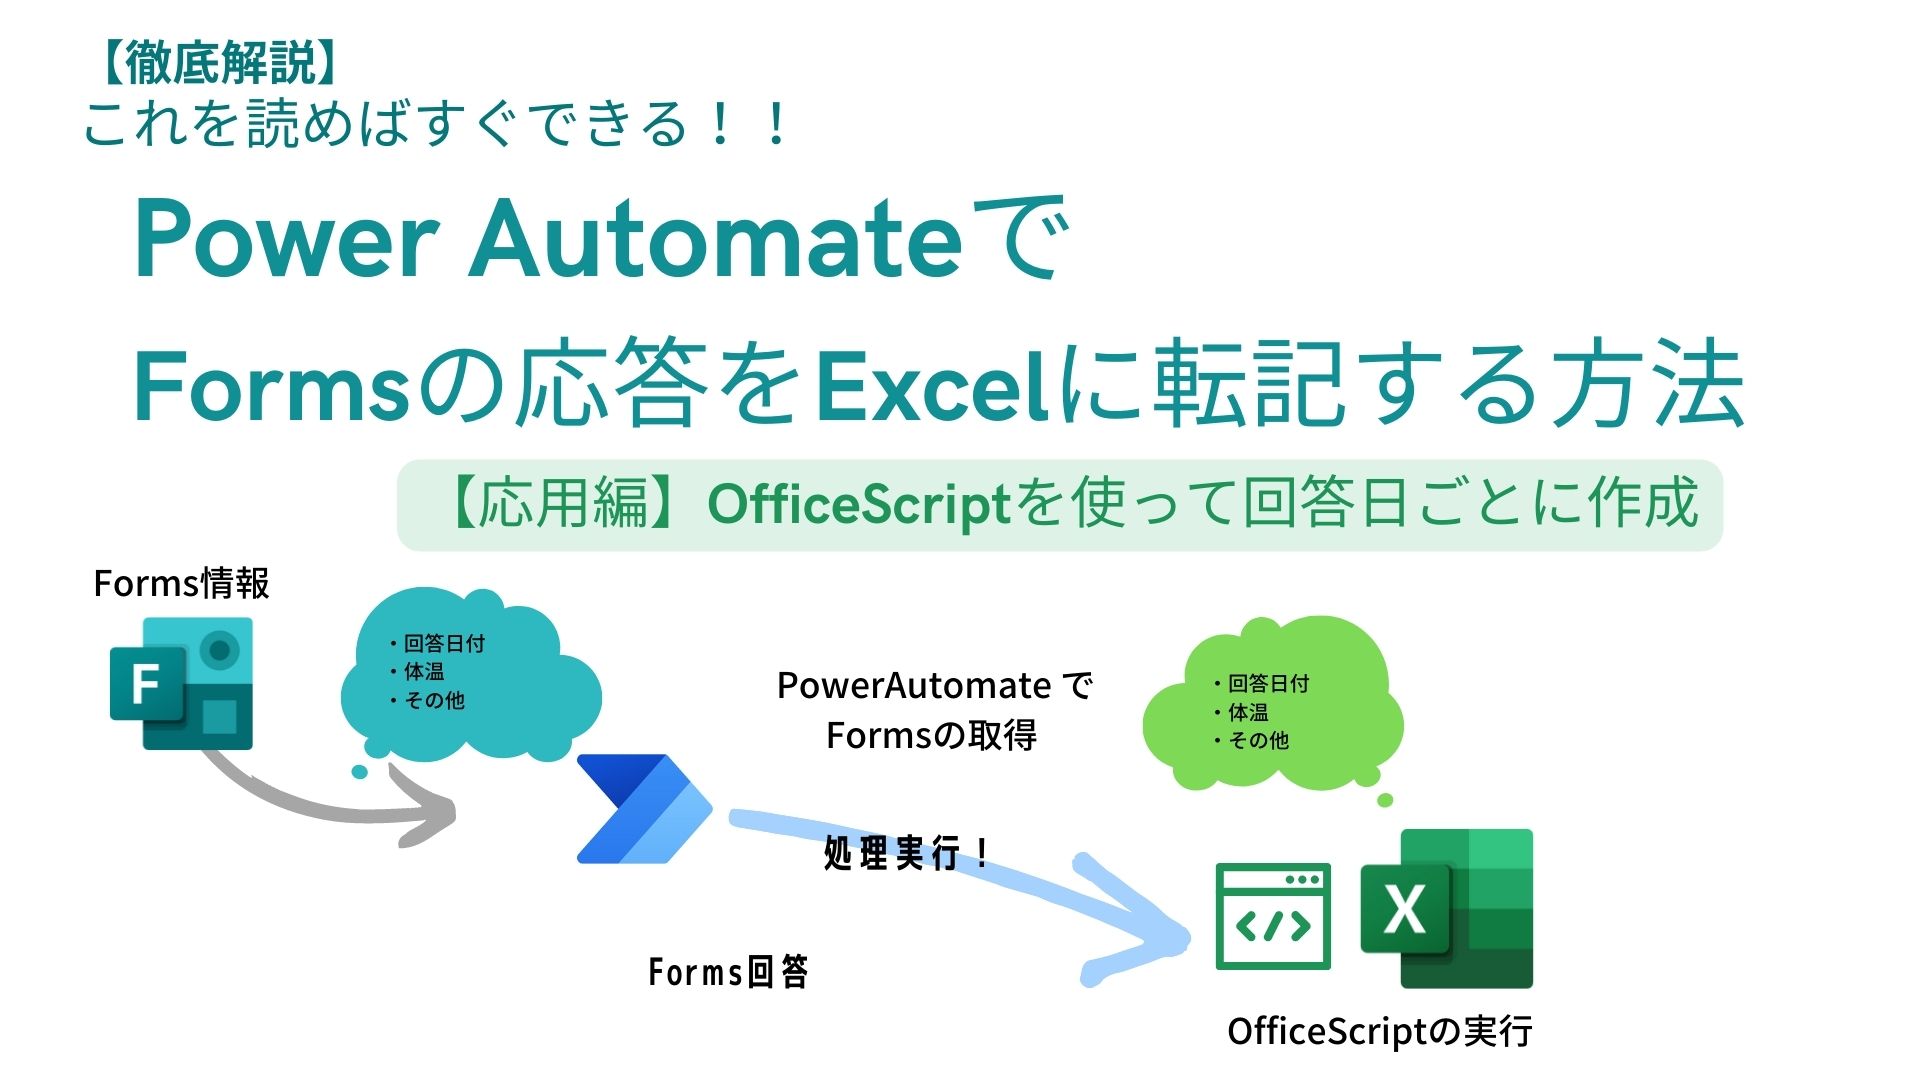 Forms OfficeScript Excel 転記